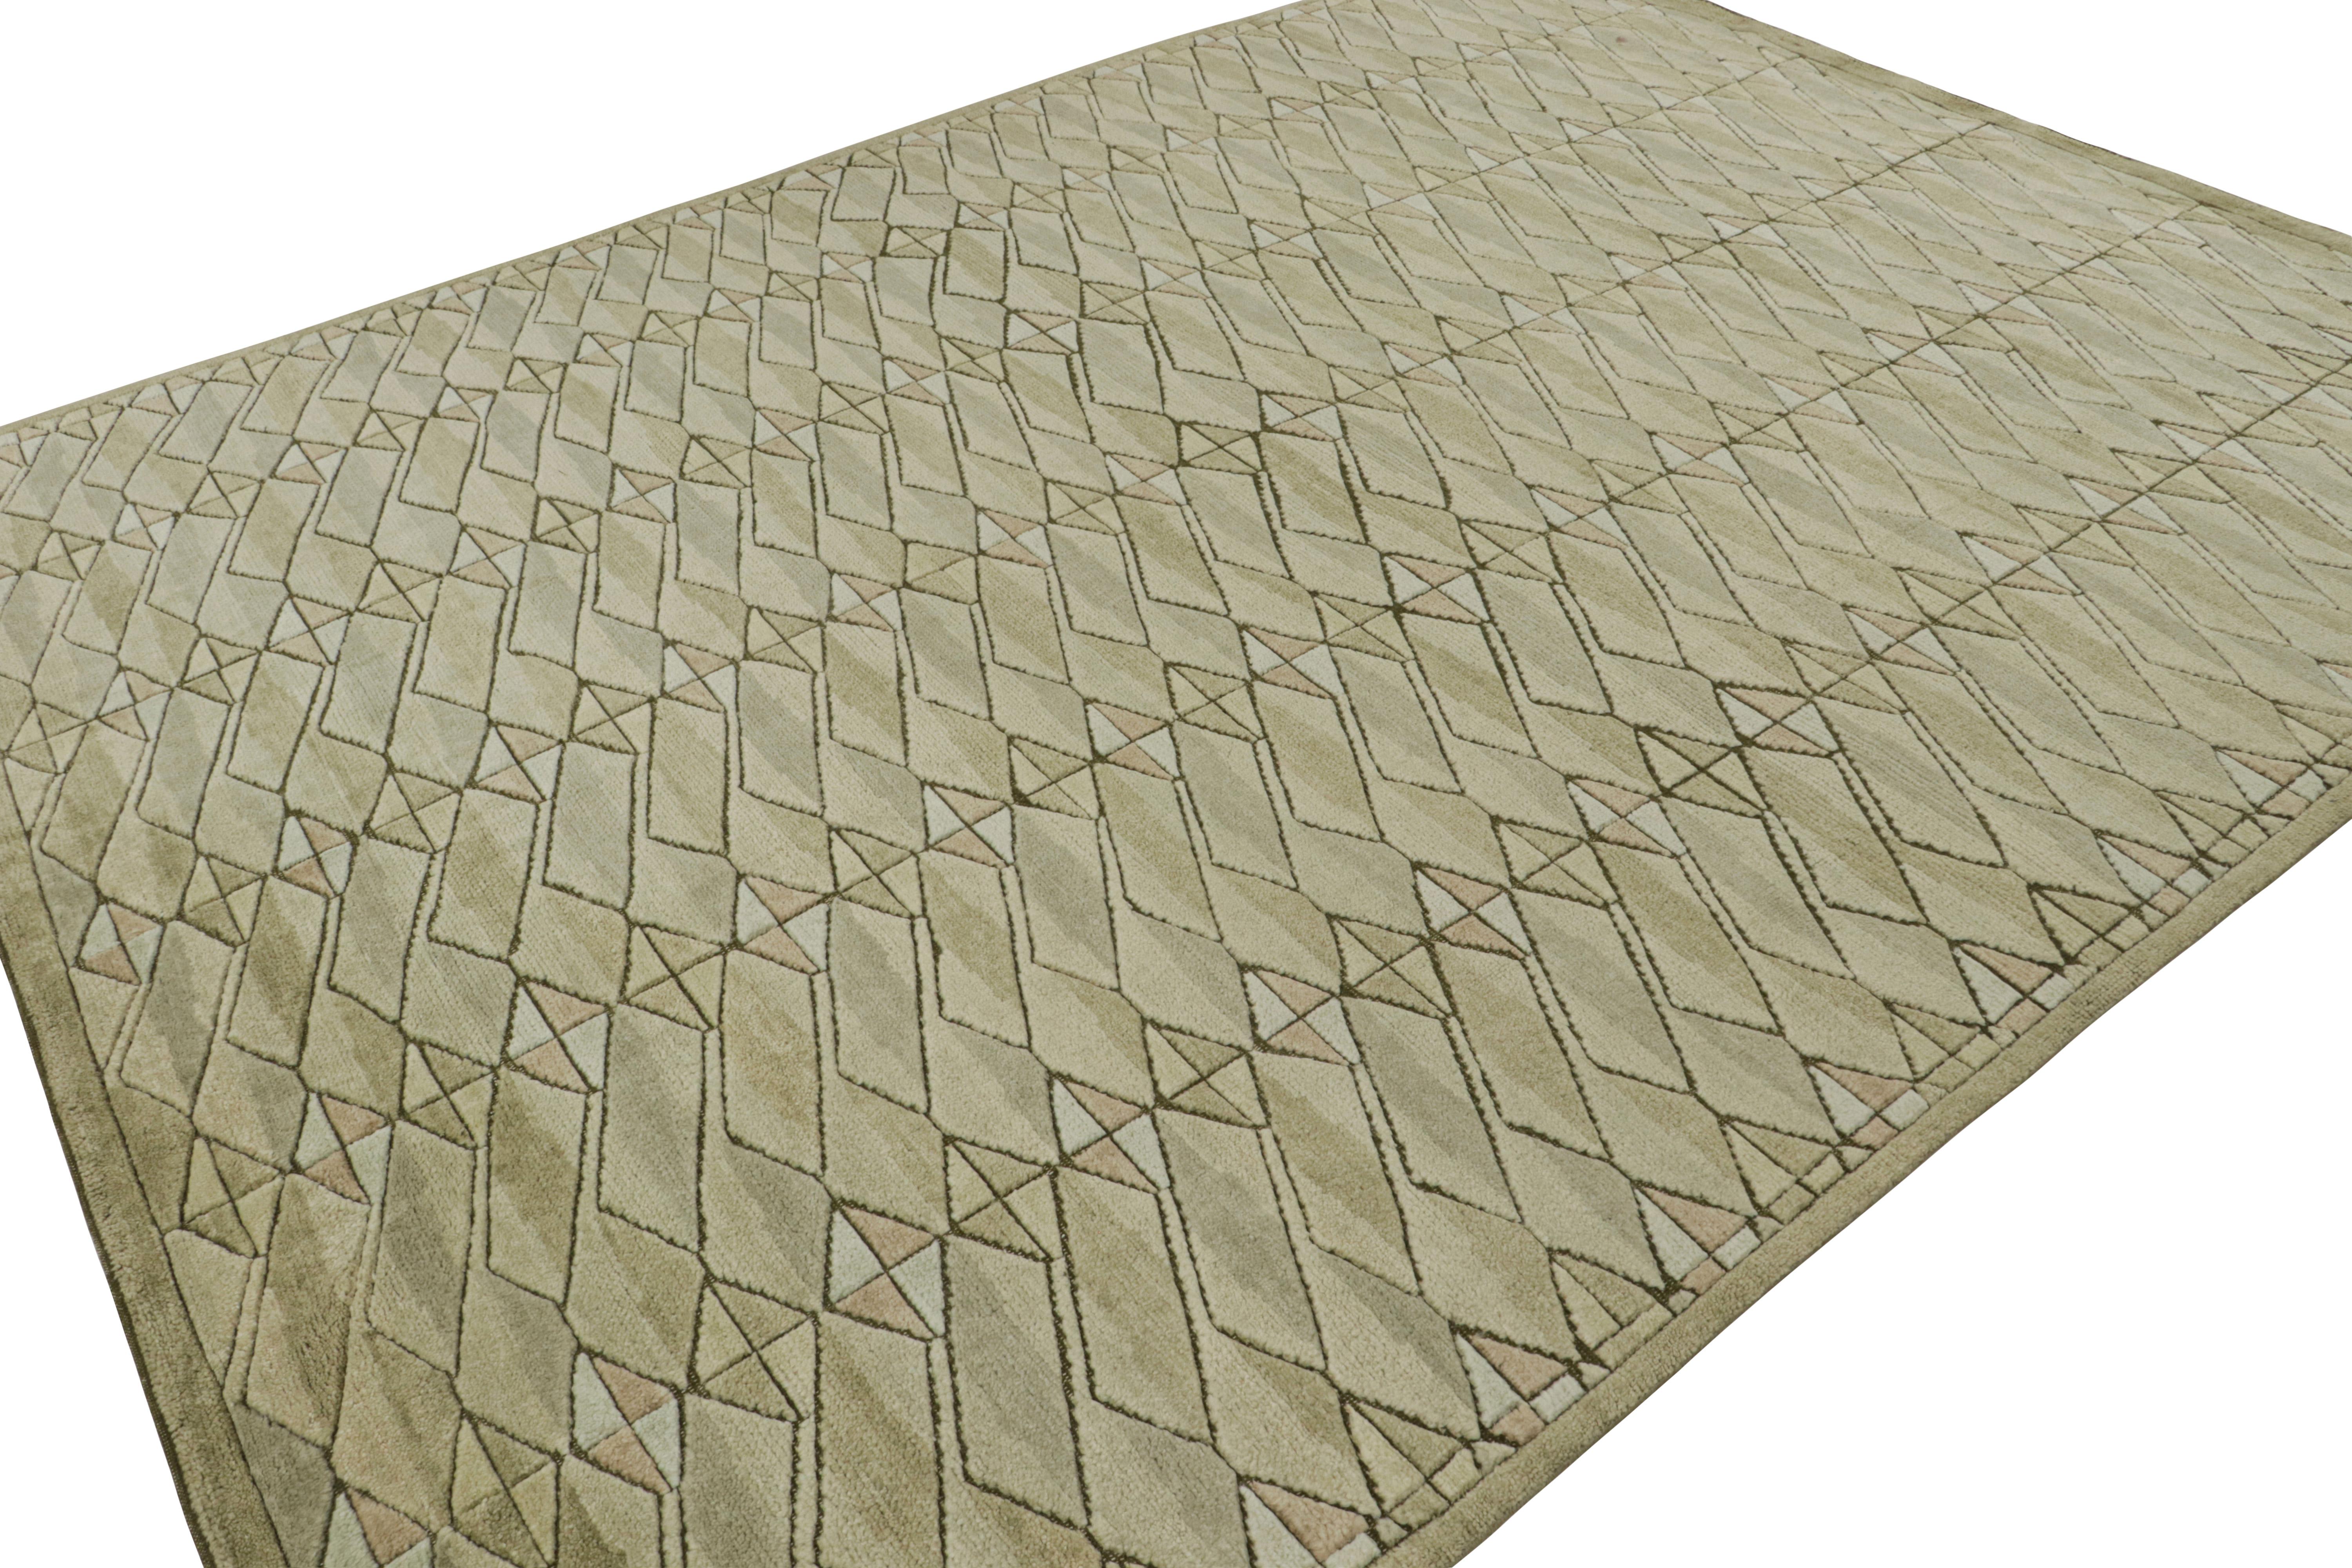 Dieser 9x12 große Teppich aus der skandinavischen Teppichkollektion von Rug & Kilim ist aus Wolle und anderen natürlichen Garnen handgeknüpft und stellt eine zeitgenössische Interpretation des schwedischen Deko-Stils Rollakan und Rya dar. 
Über das